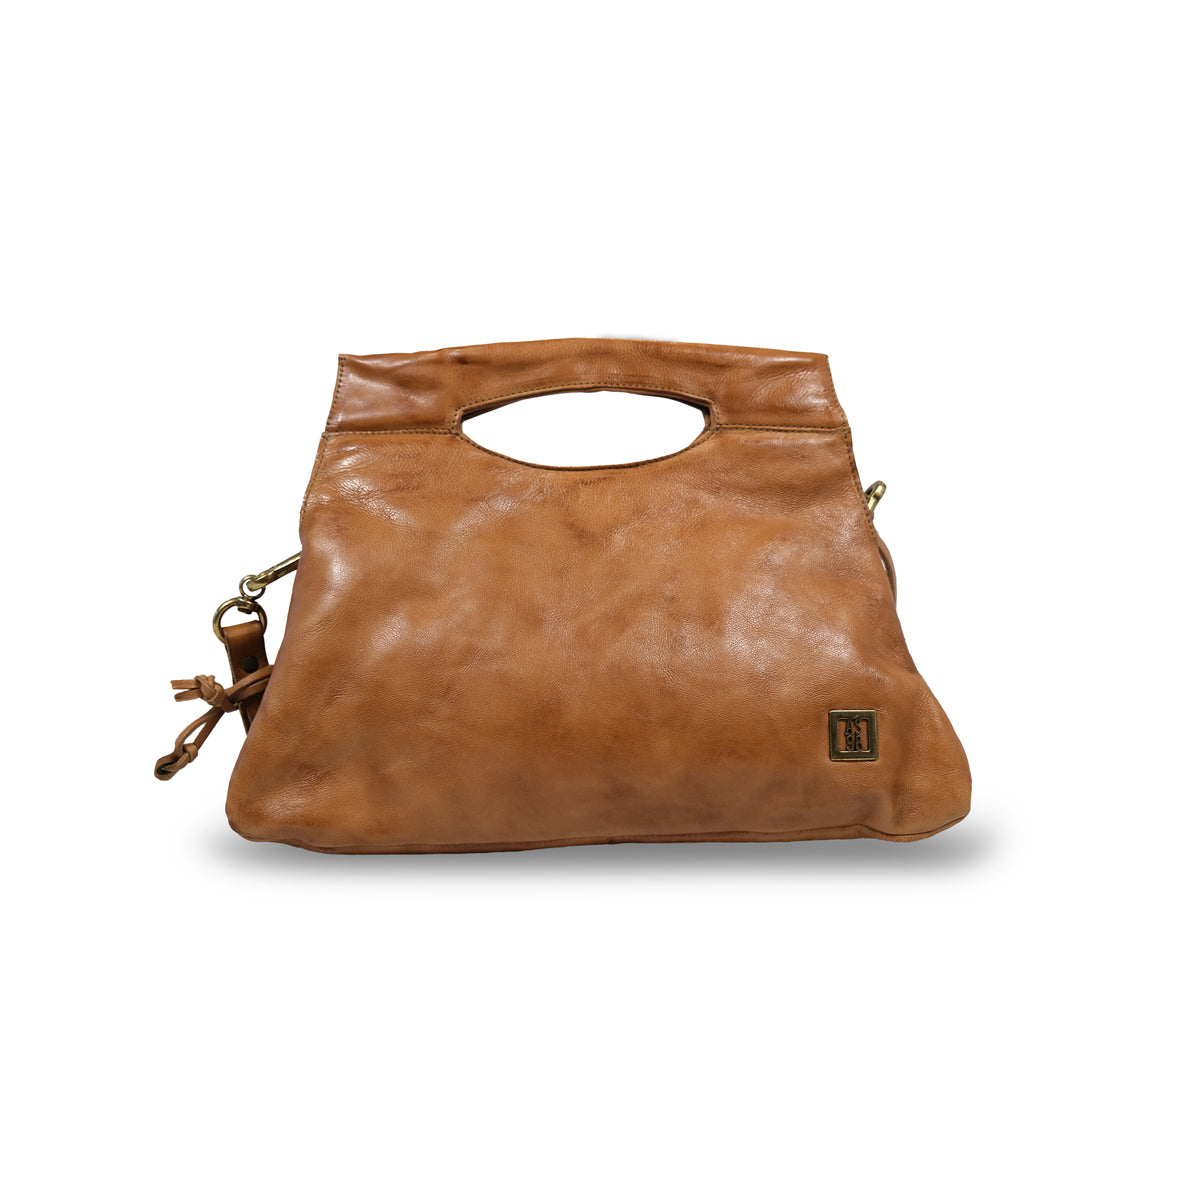 Harper - A.S. 98 - Handbags